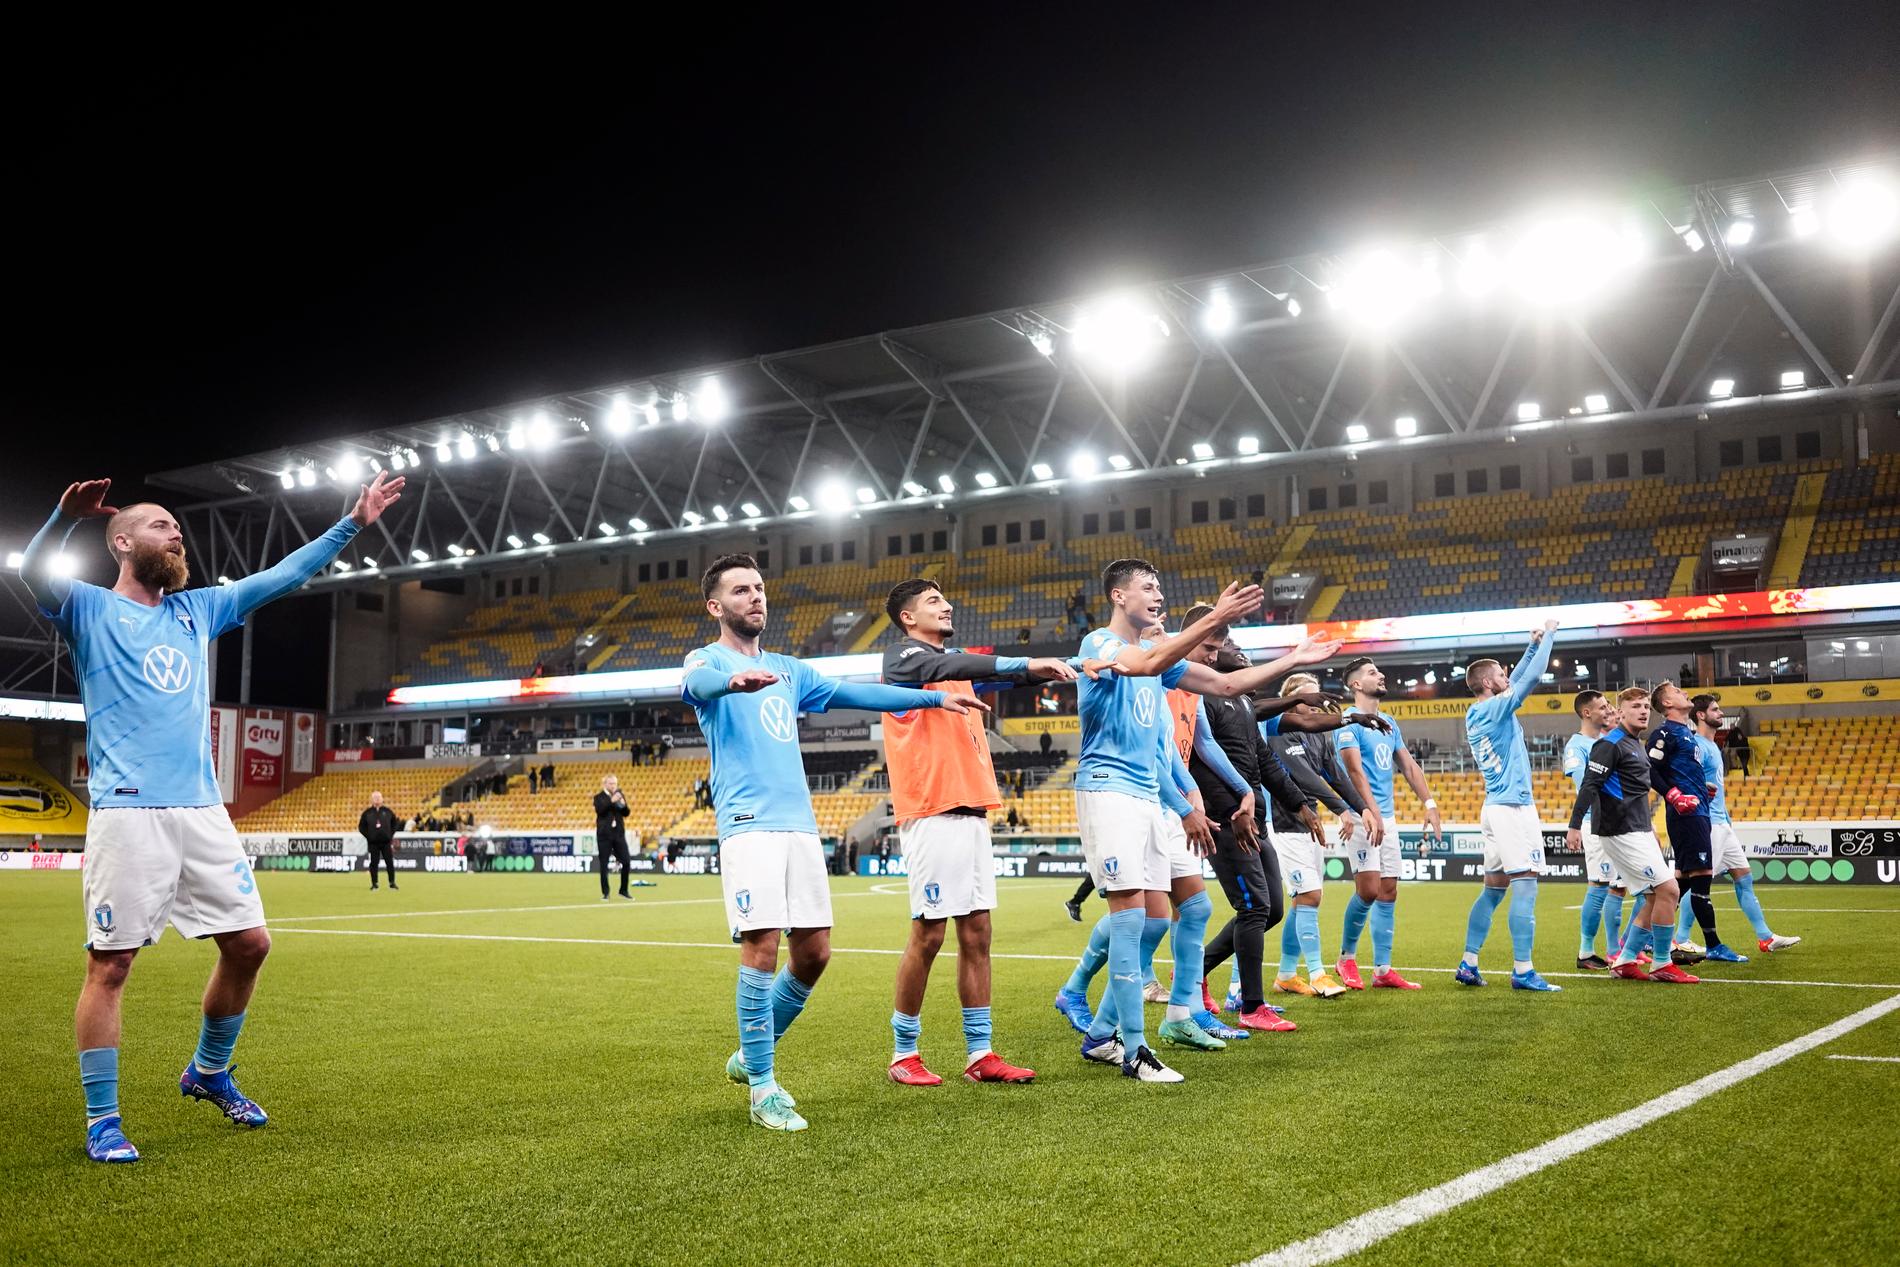 "Vår laganda är fantastisk. Än än gång har pojkarna visat attityd och kämpat hårt", säger Malmös tränare Jon Dahl Tomasson efter segern mot Elfsborg. Laget firtar m,ed fansen.